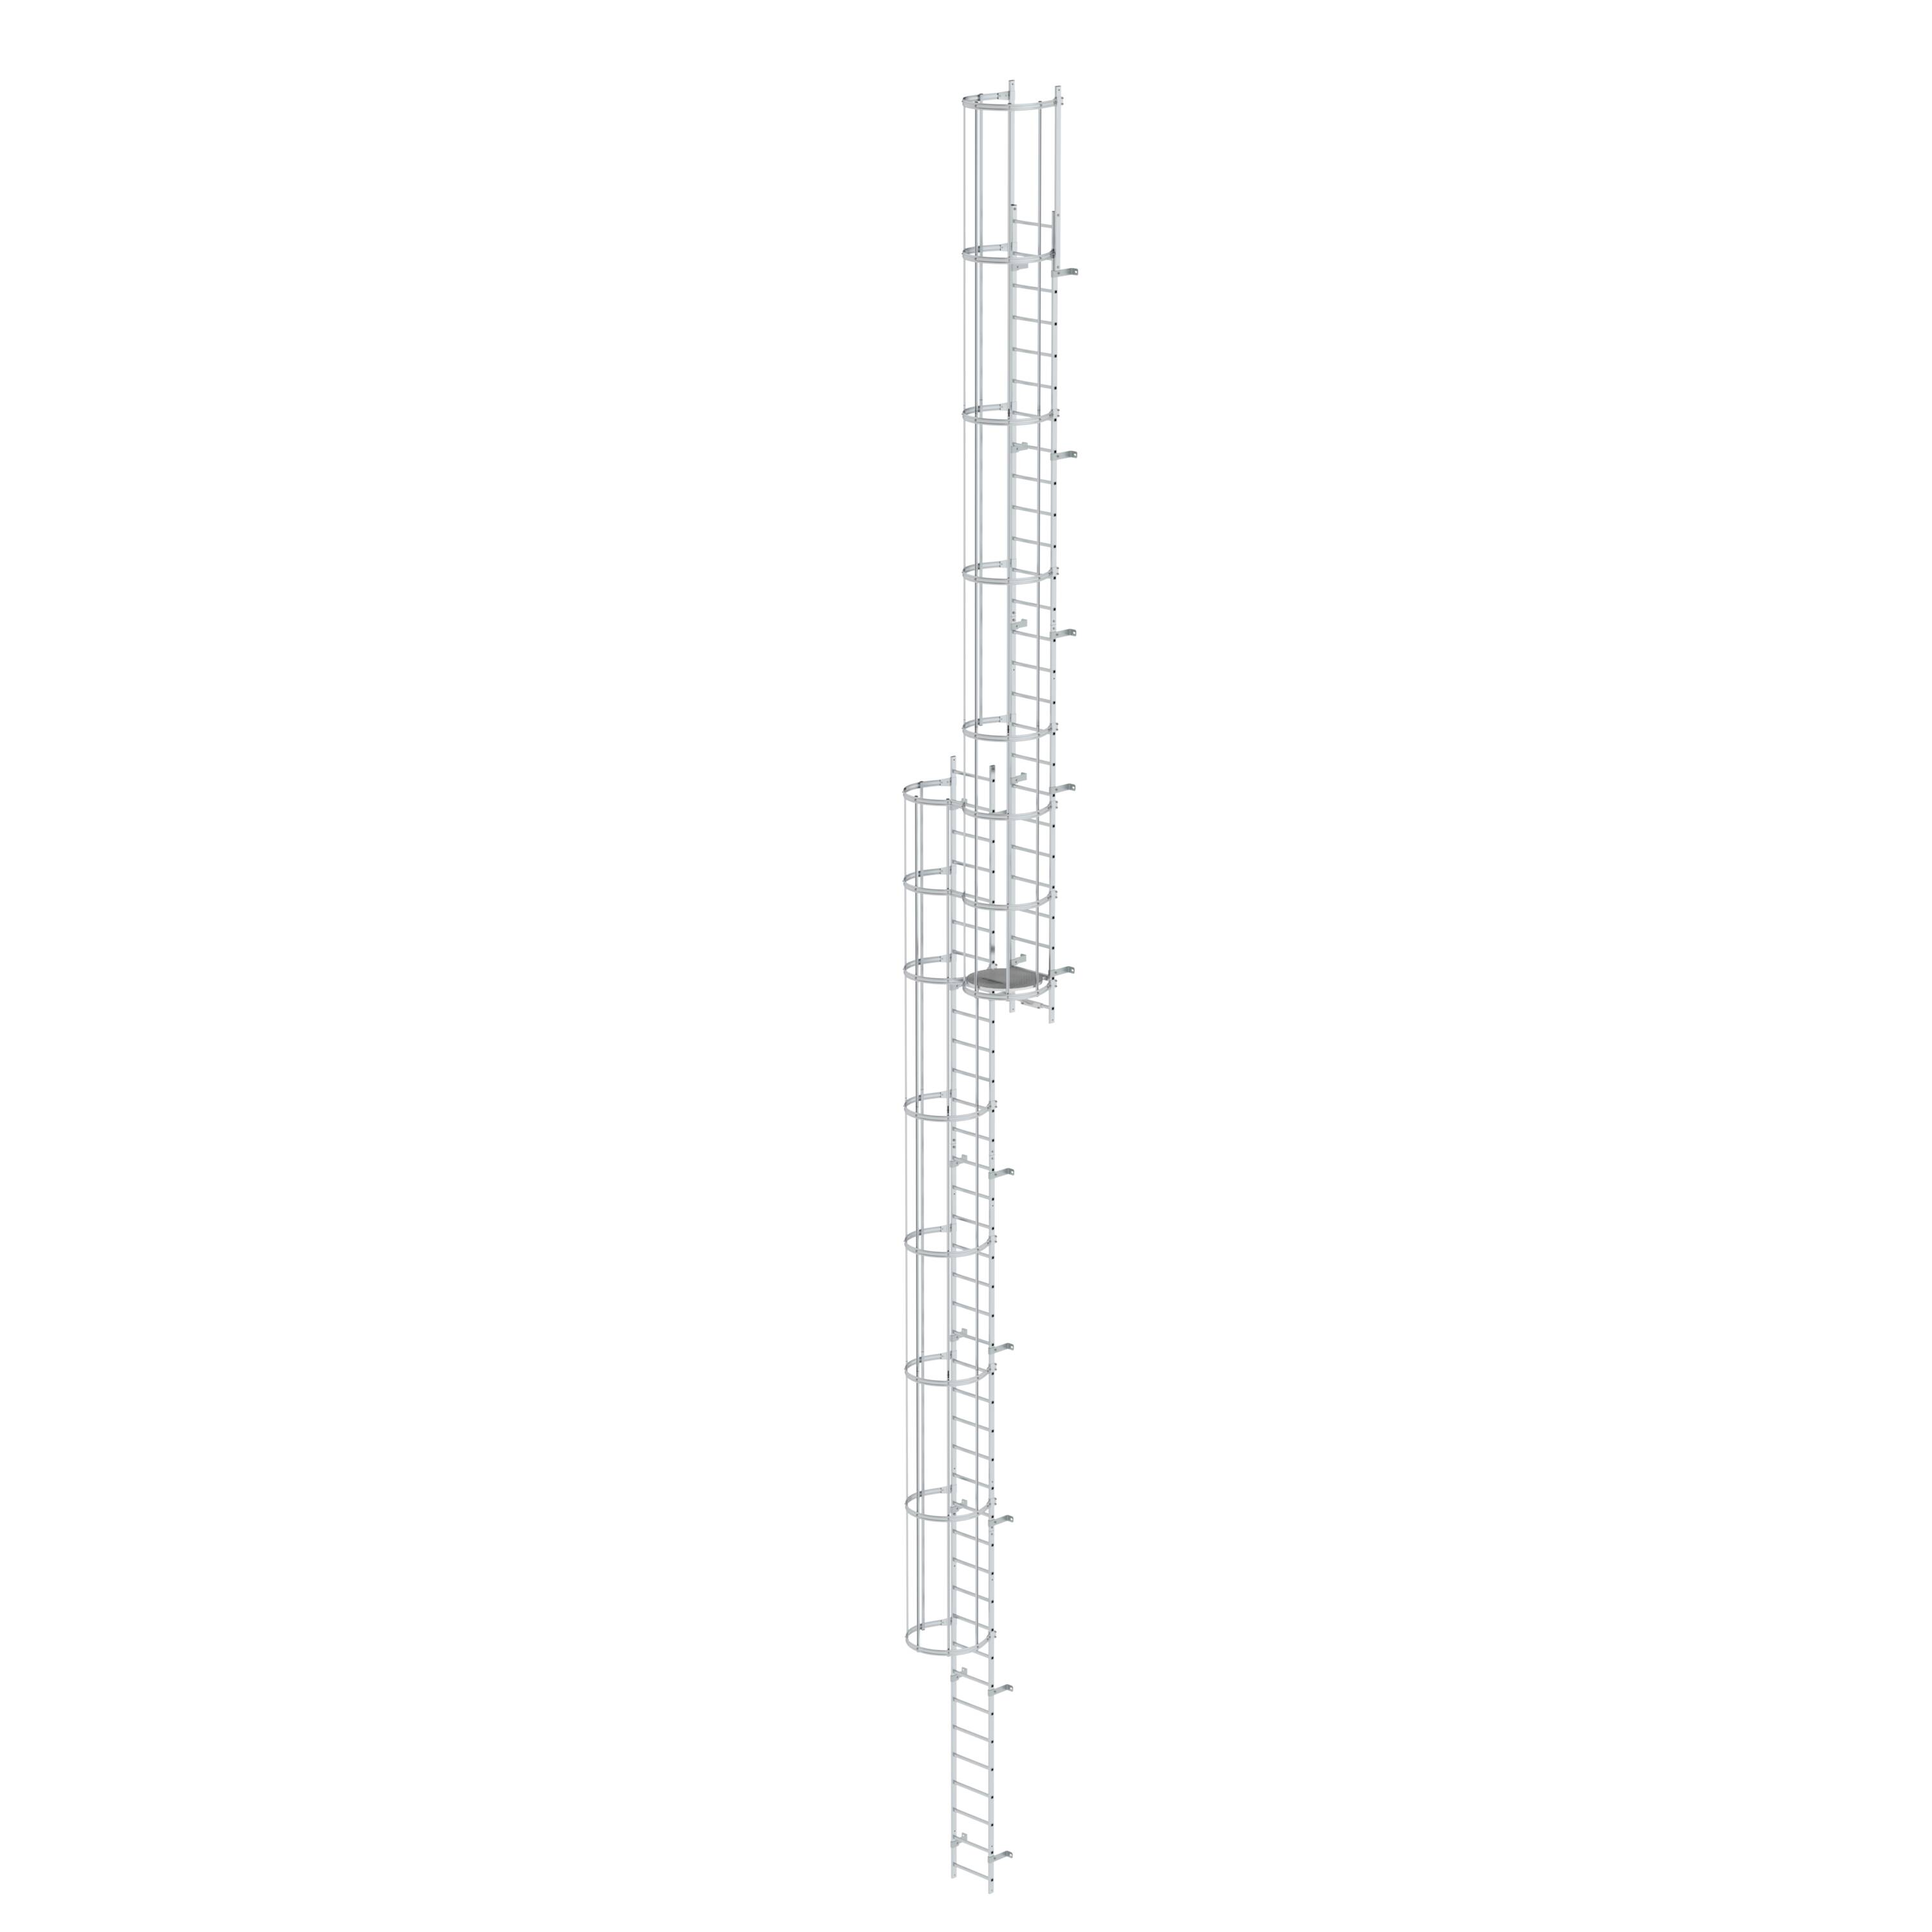 Mehrzügige Steigleiter mit Rückenschutz (Bau) Aluminium blank 17,16m